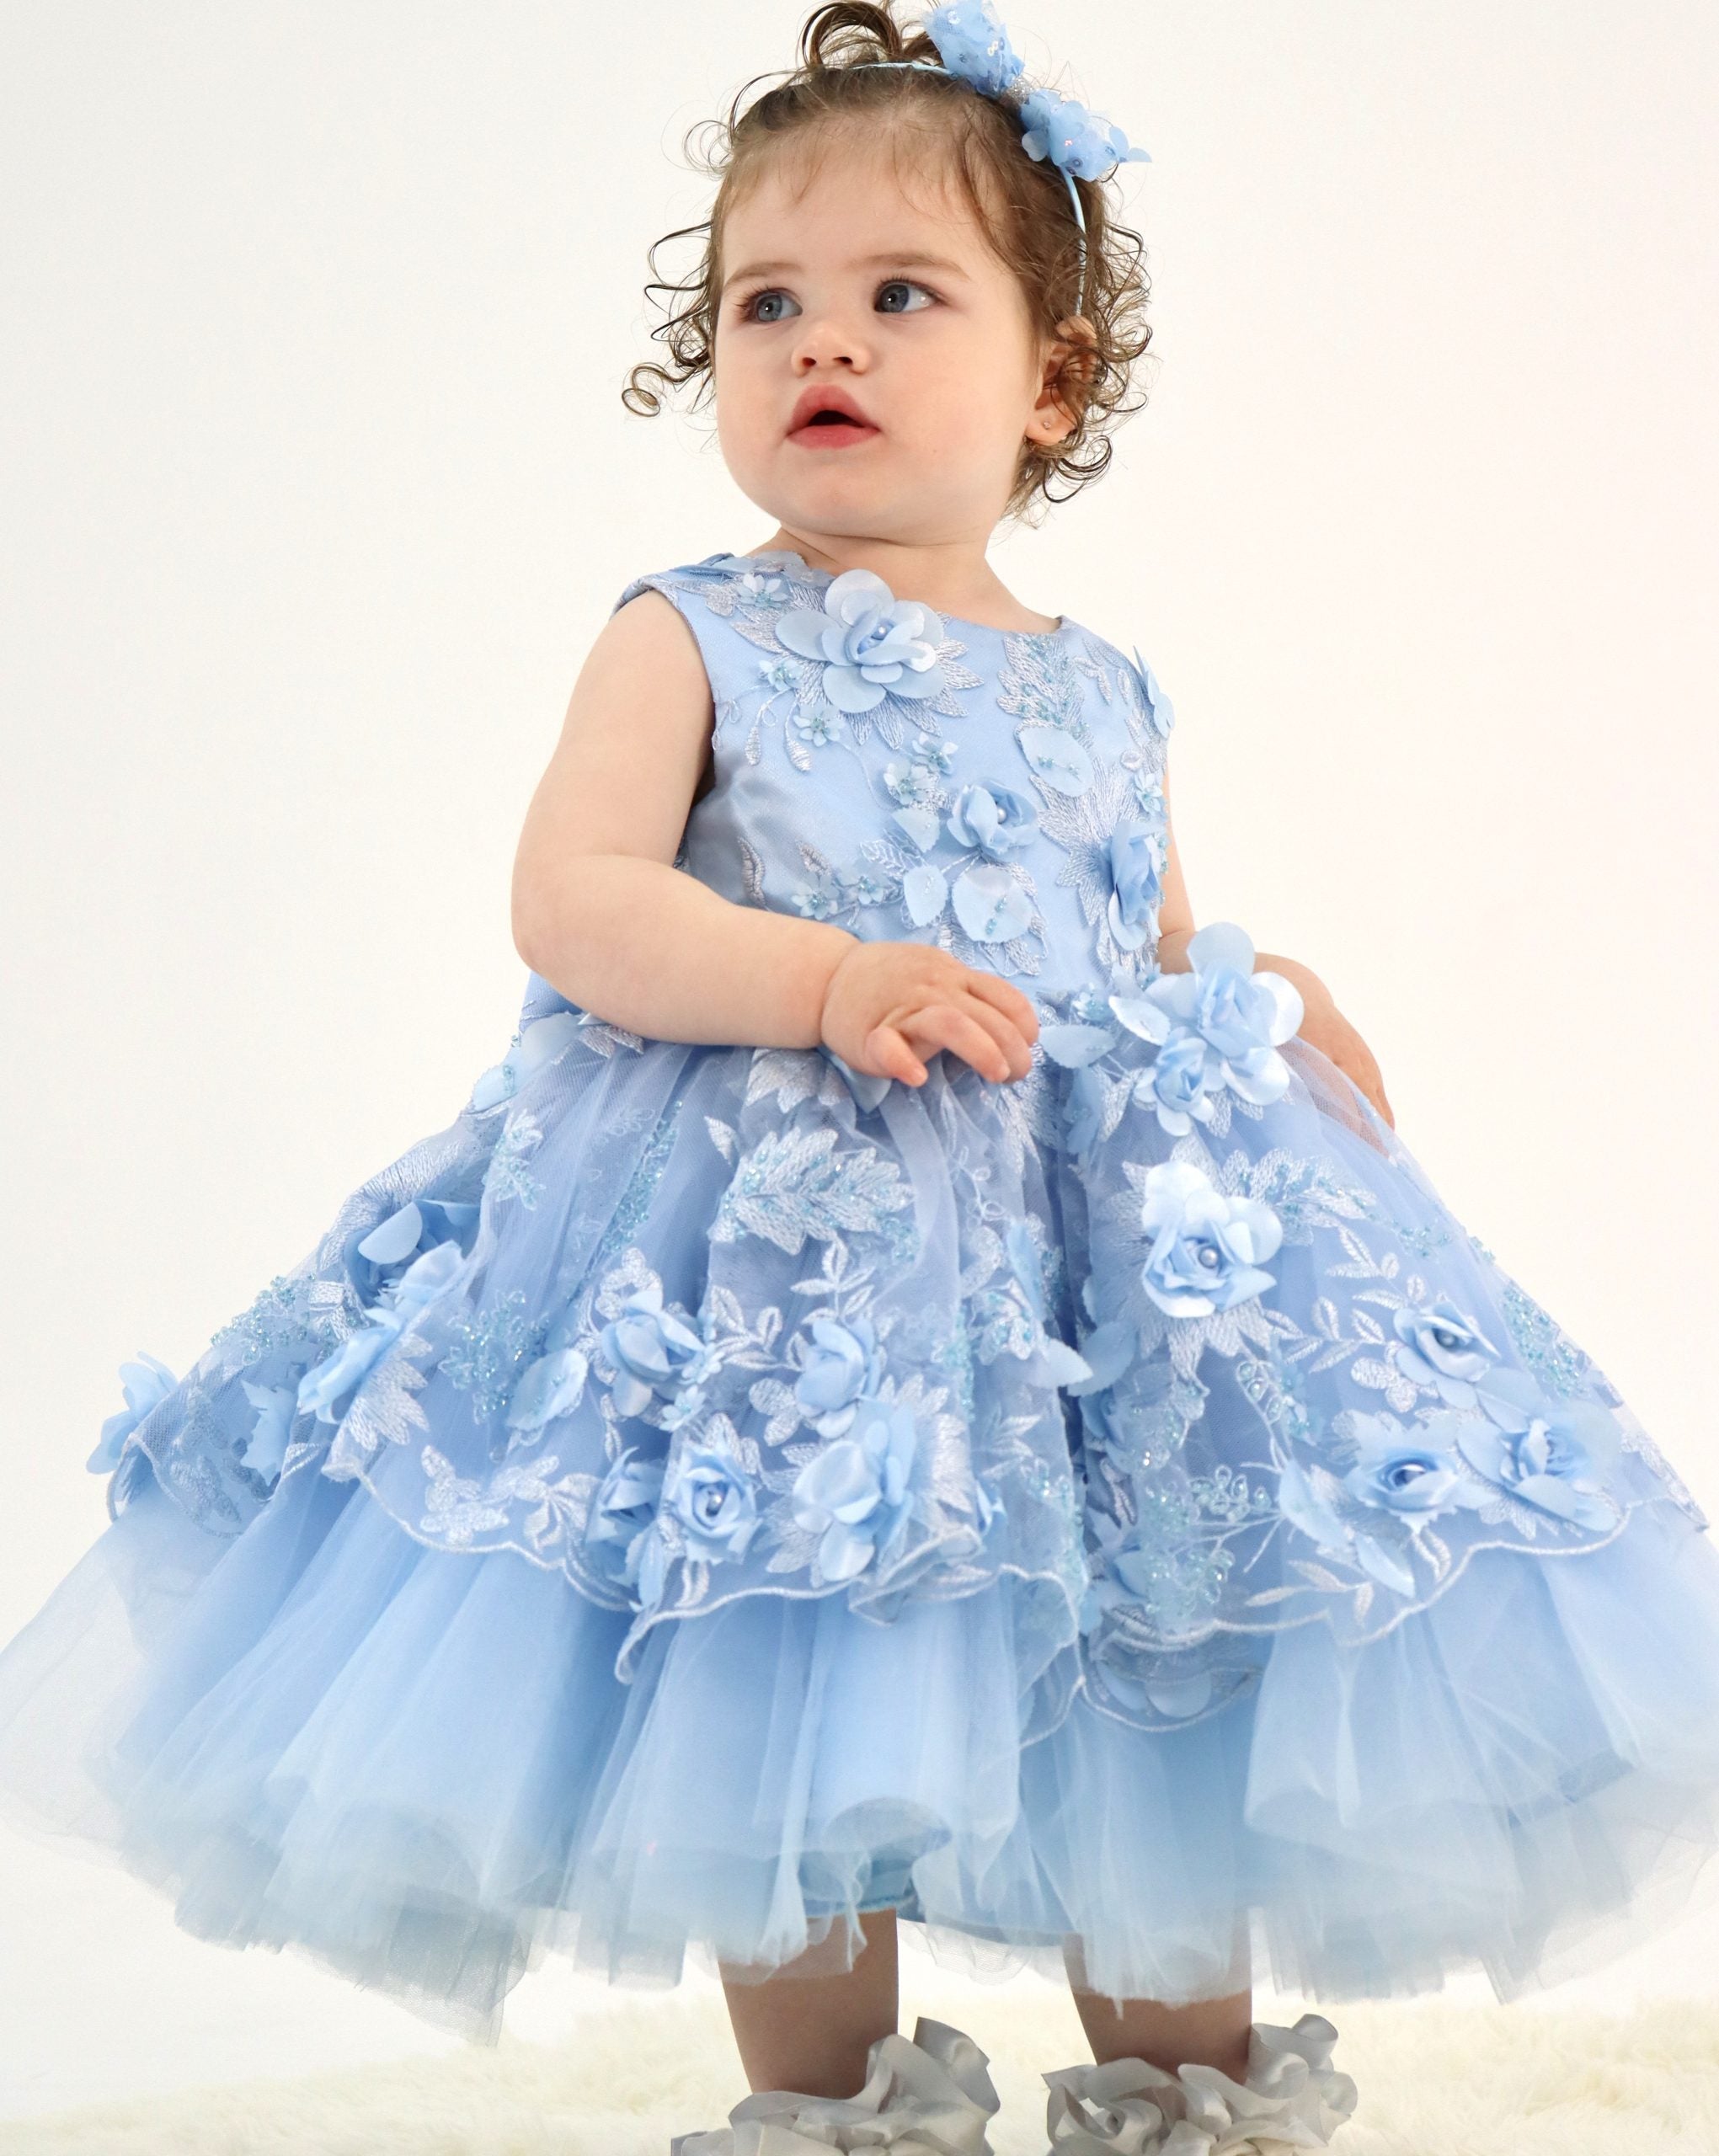 Amarah Blue Dress - First Birthday Dress